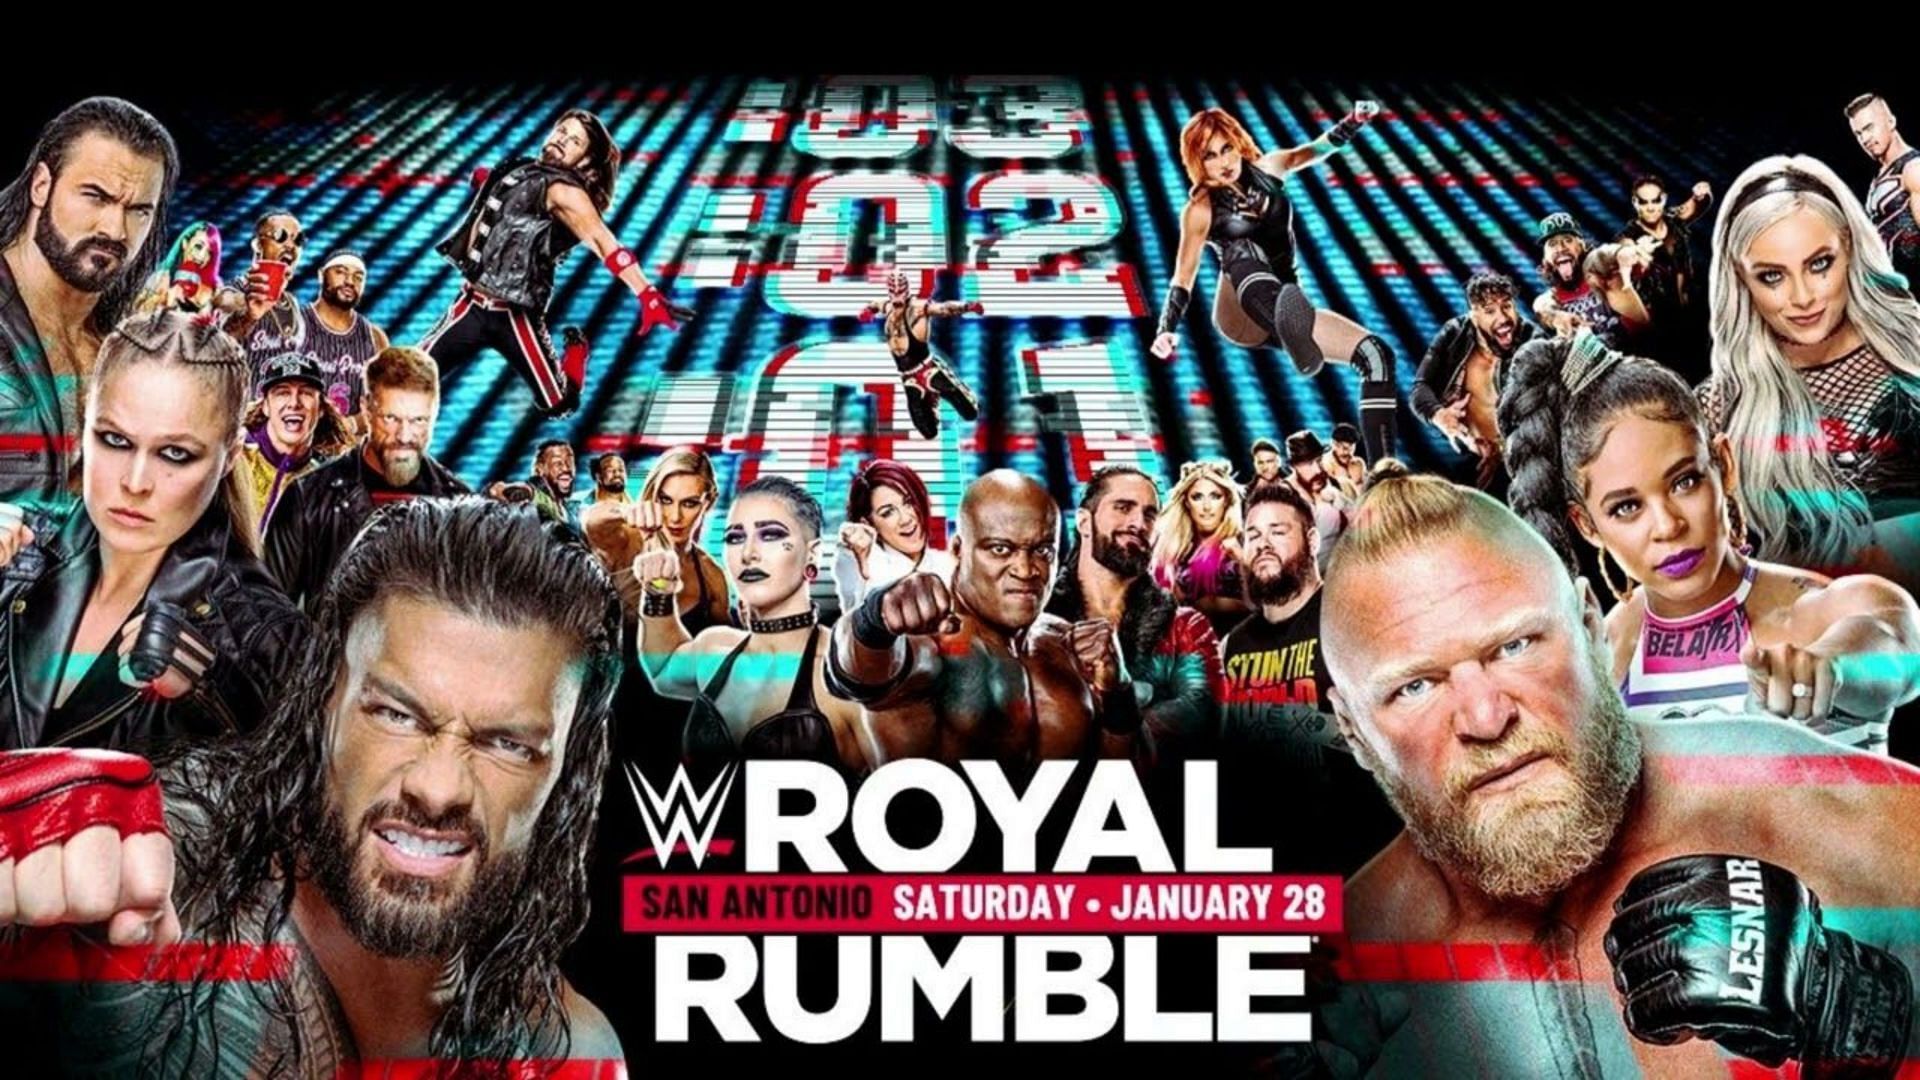 WWE Royal Rumble में फैंस को मिलेगा सरप्राइज